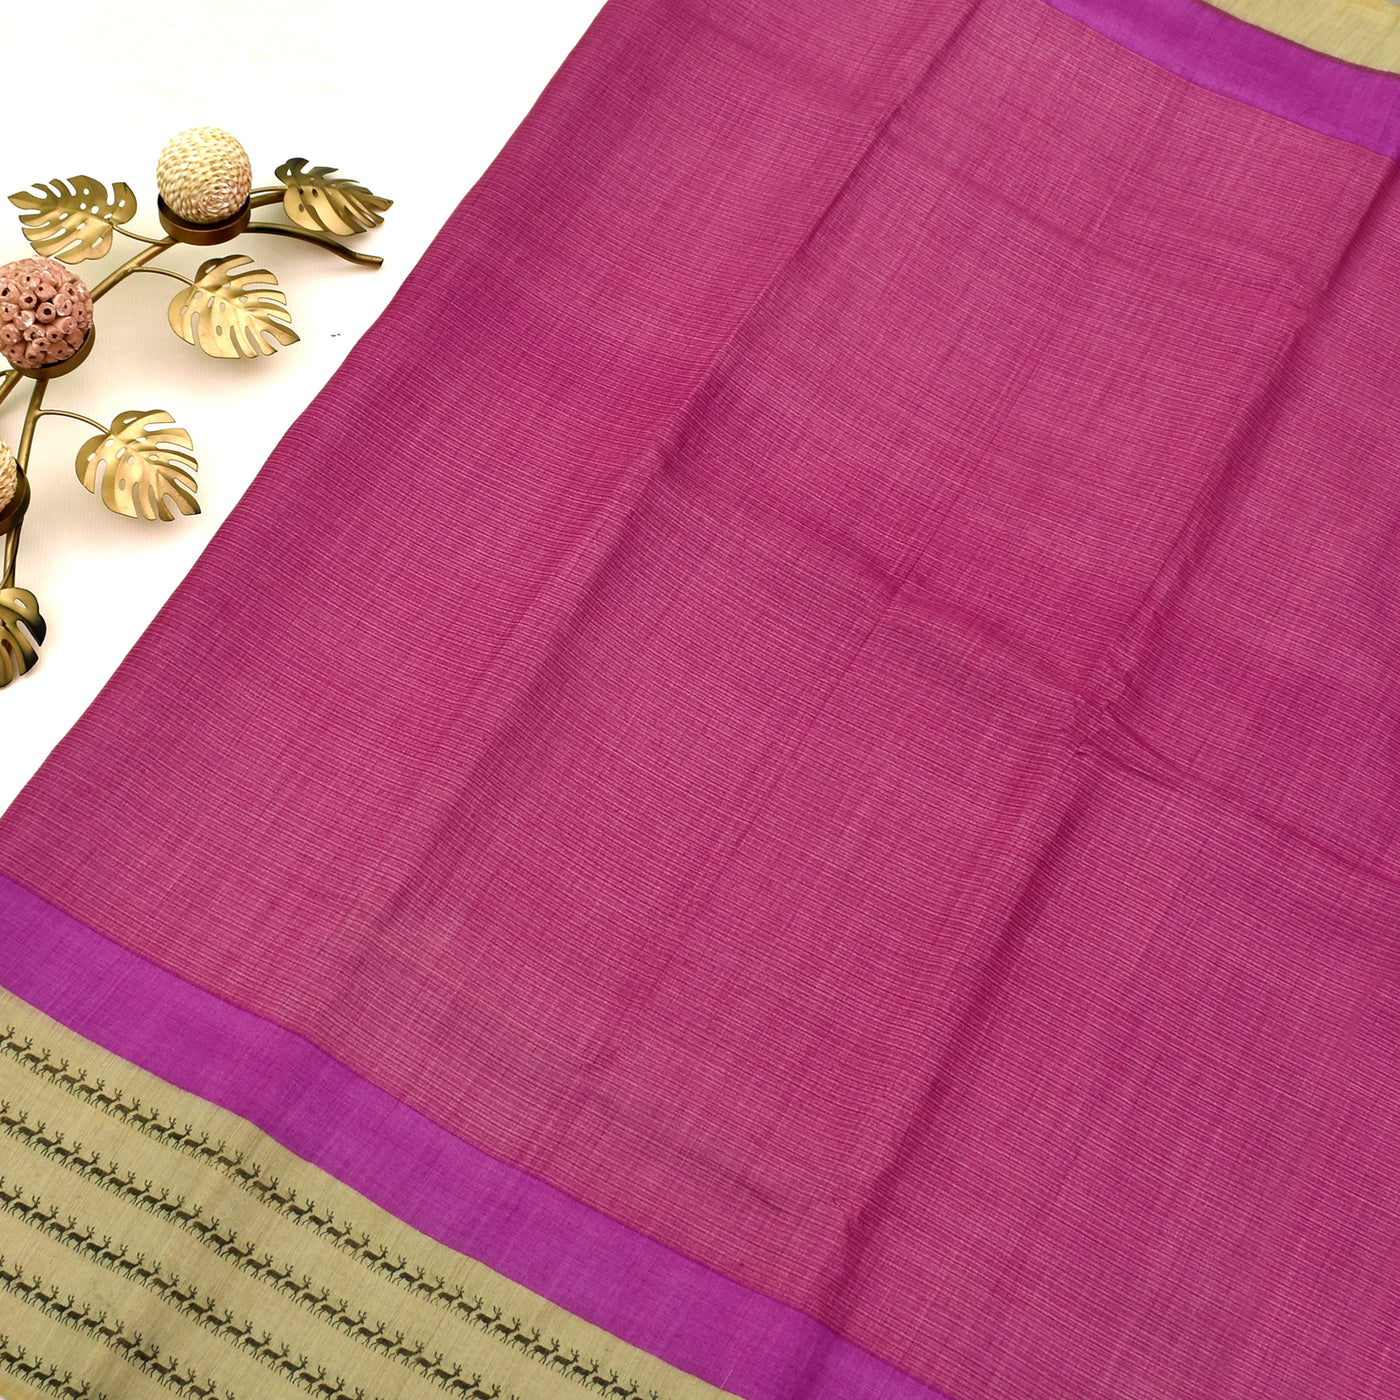 Pink Tussar Silk Saree with plain design